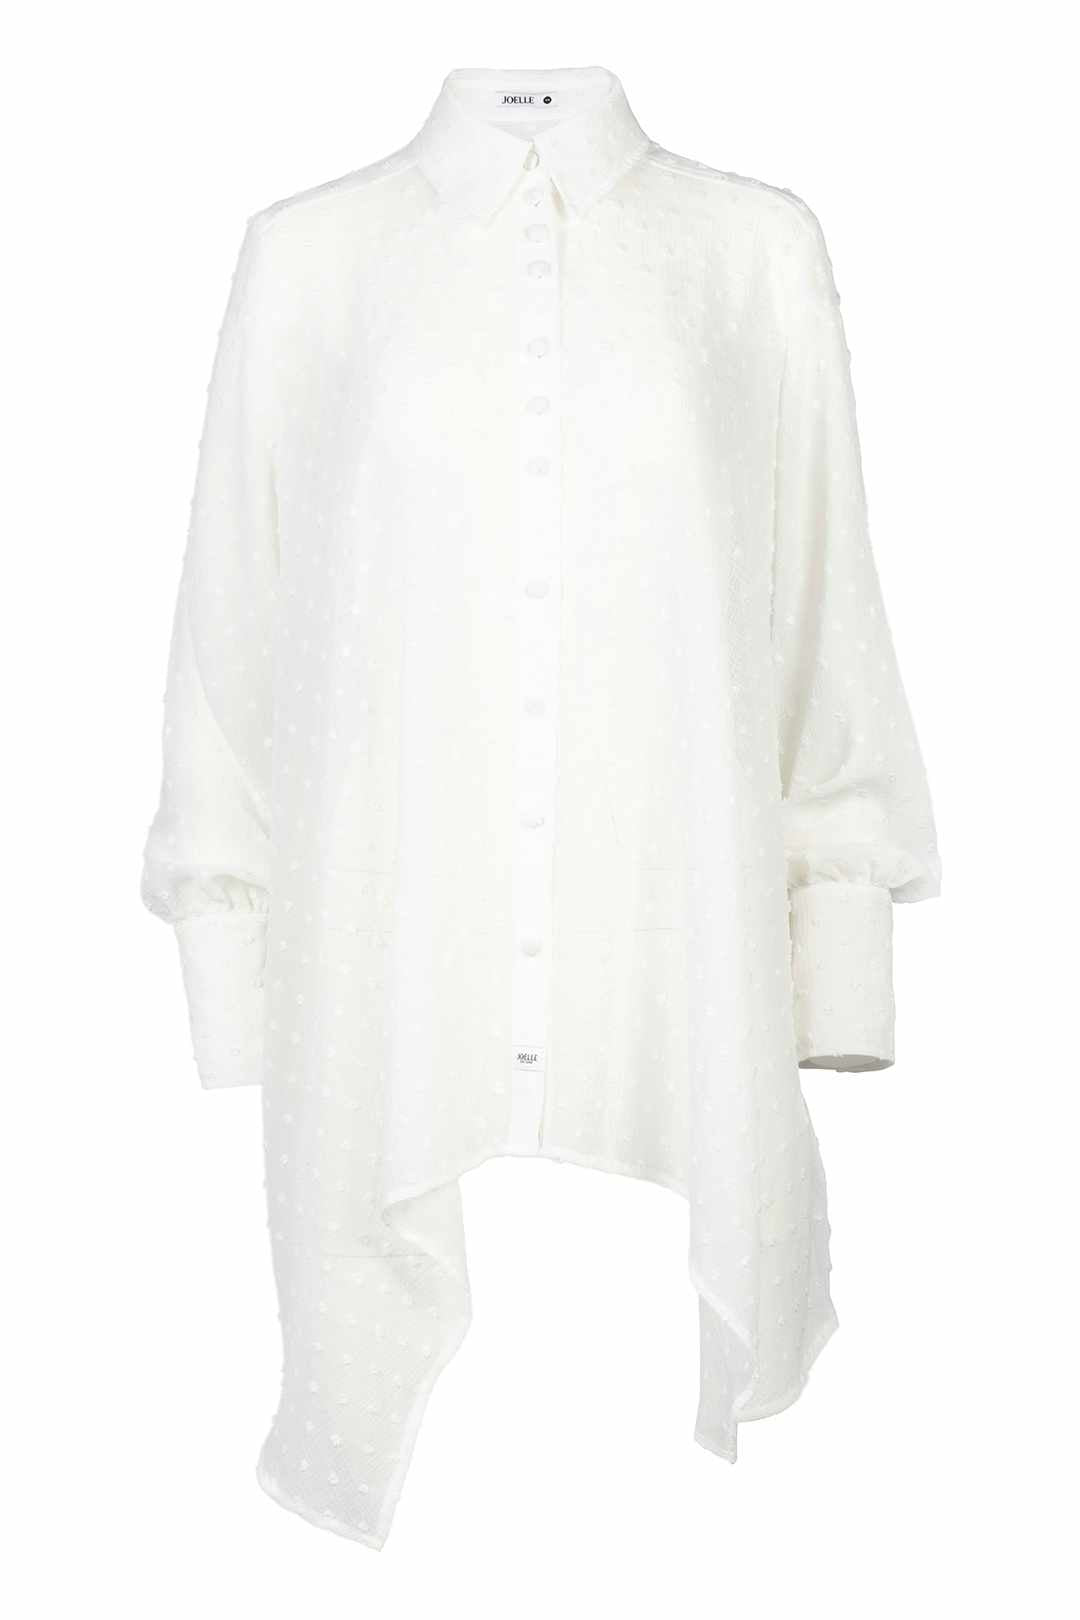 Asymmetrical white shirt | Zolan